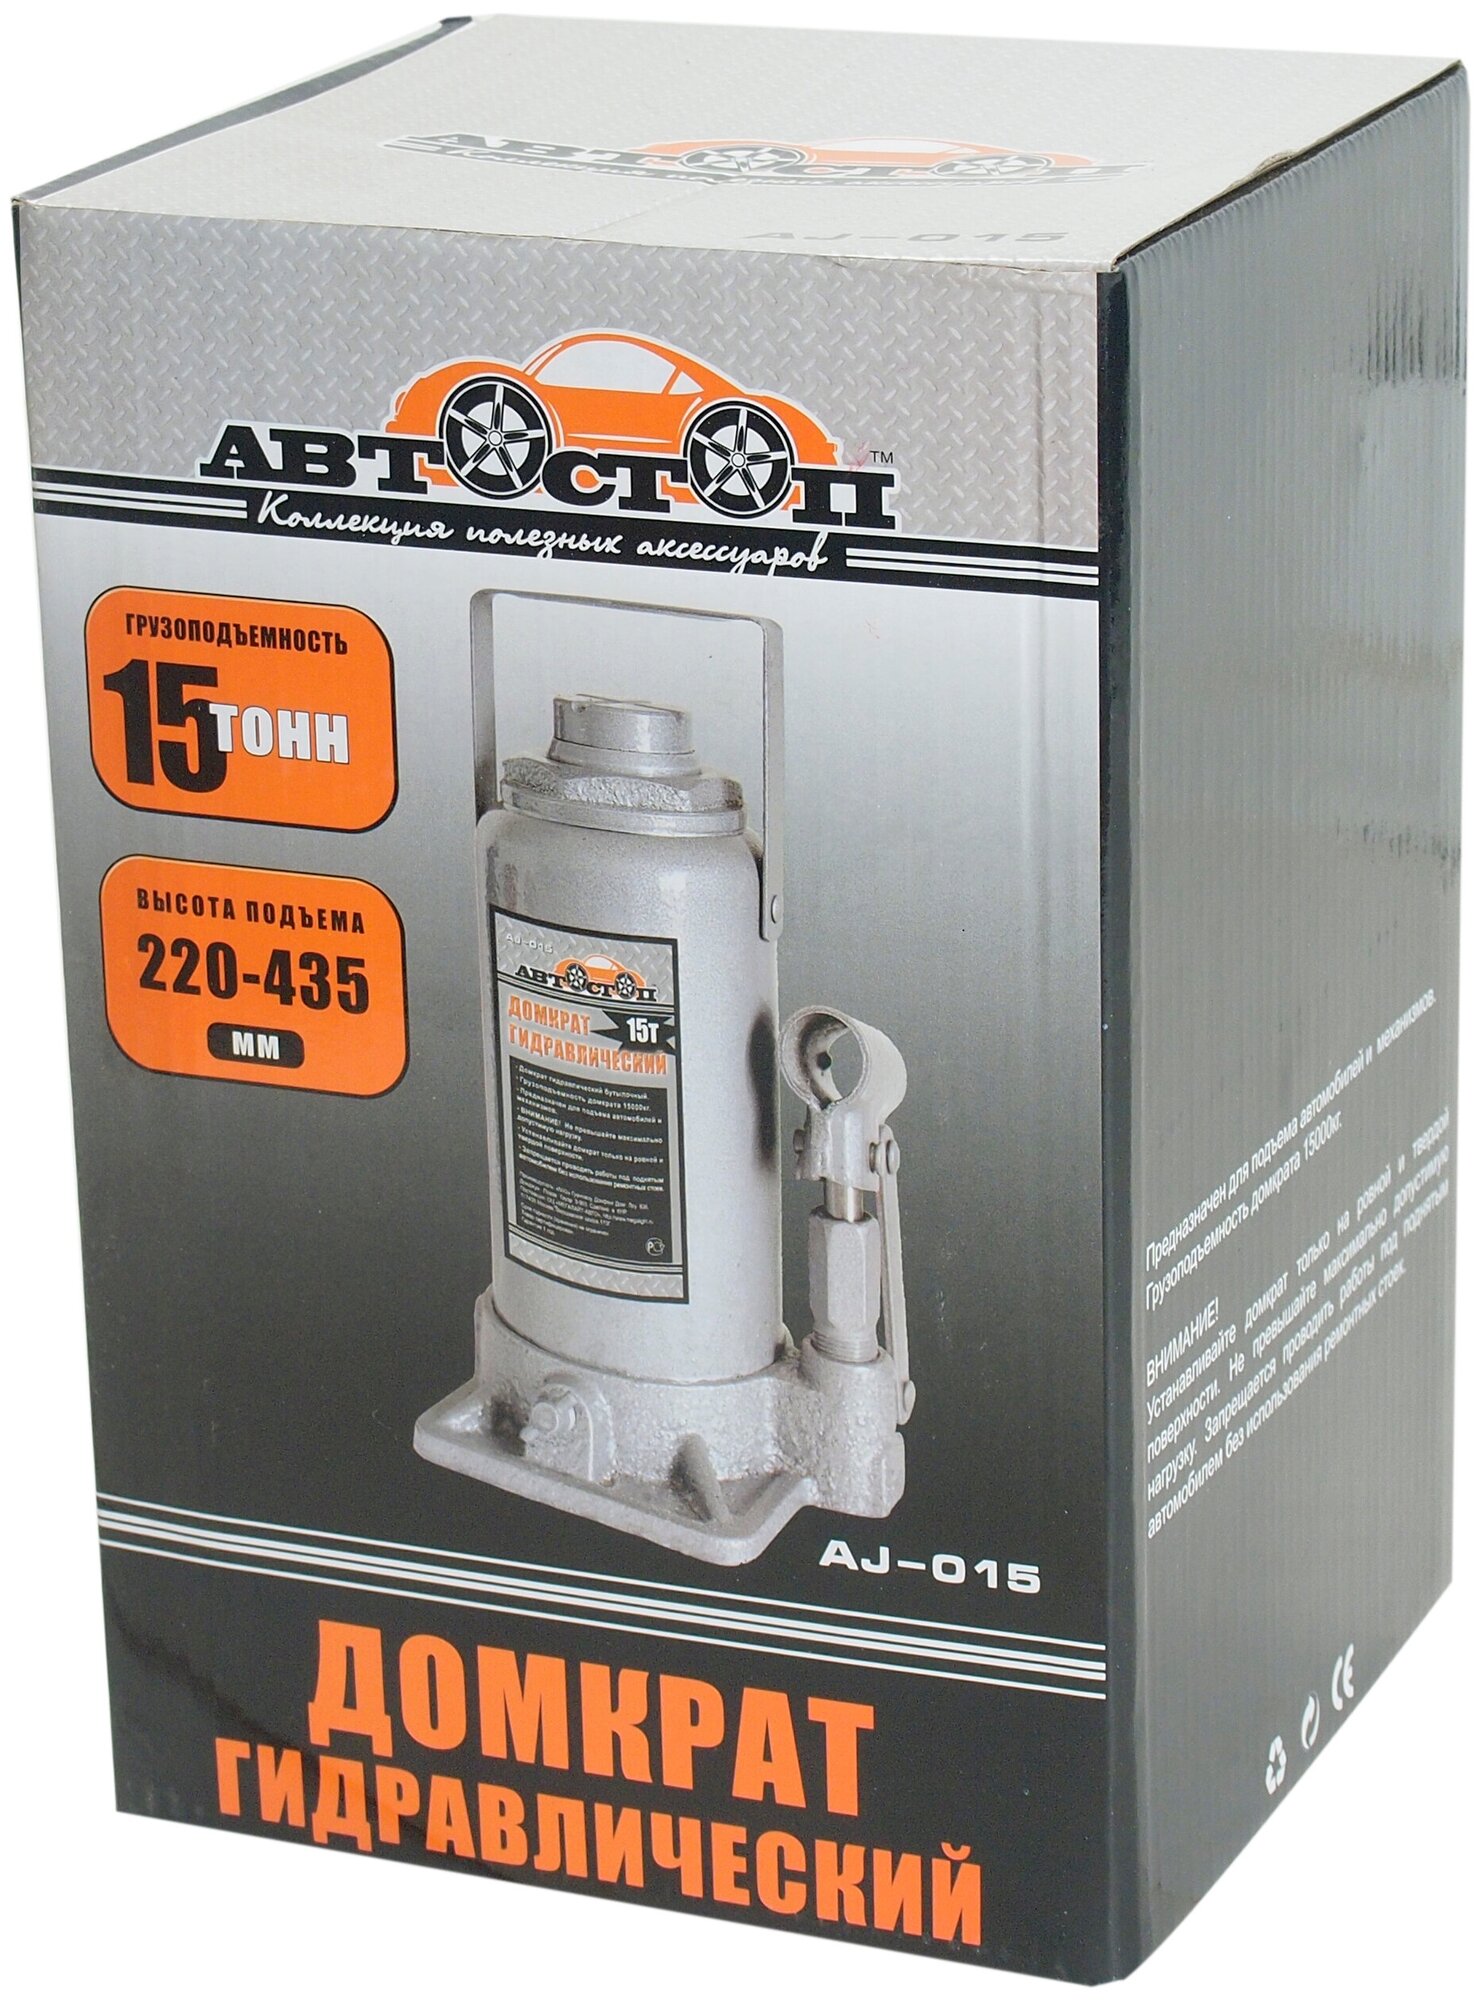 Домкрат бутылочный гидравлический Автостоп AJ-015 (15 т)